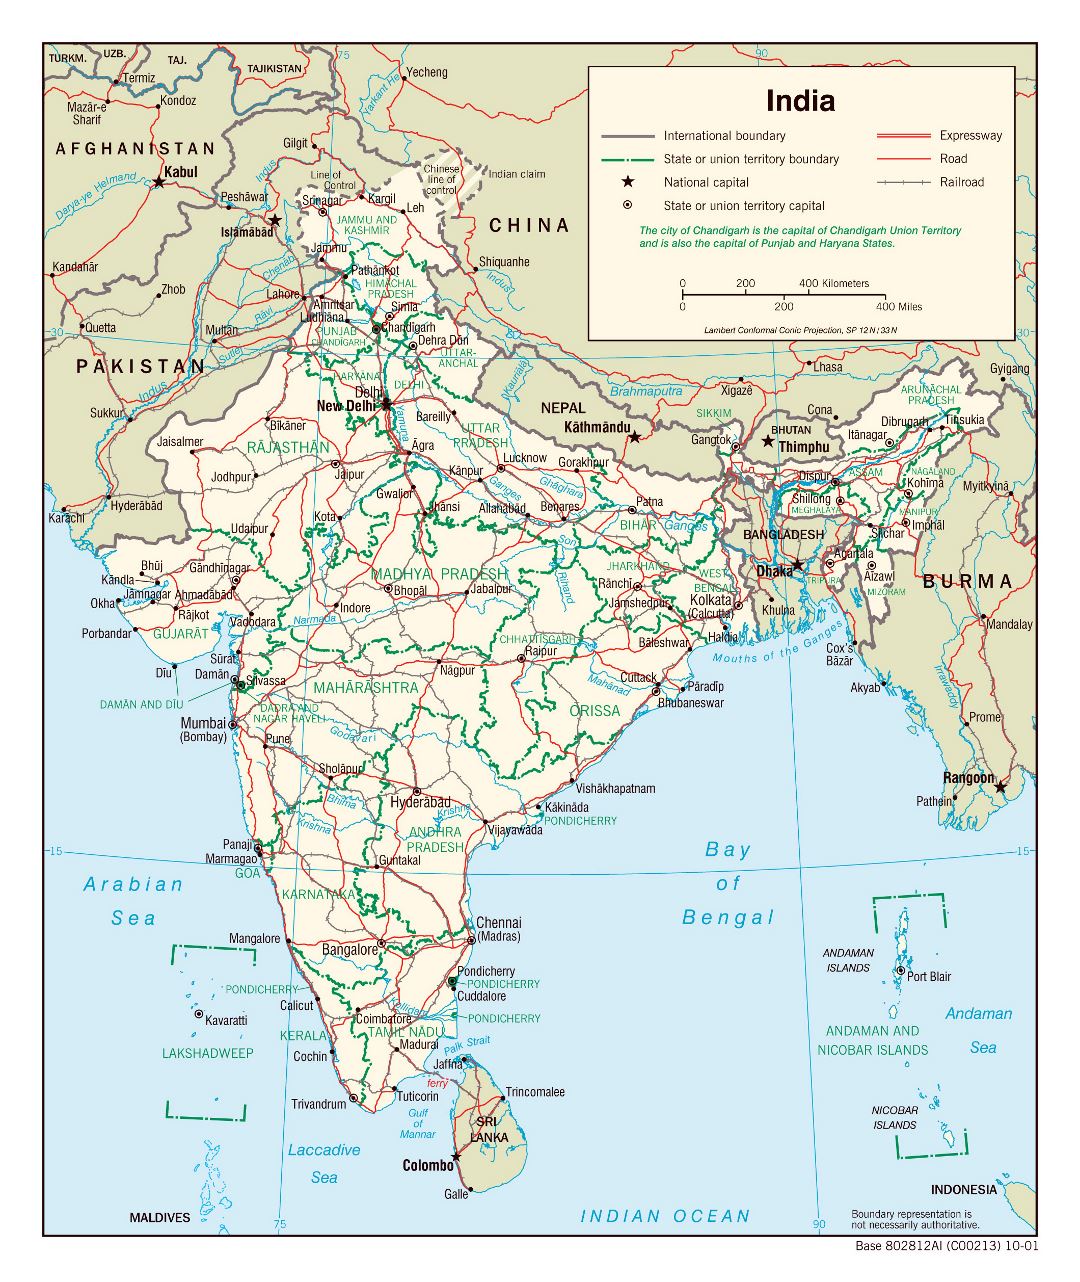 Grande detallado mapa político y administrativo de la India con carreteras, ferrocarriles y principales ciudades - 2001